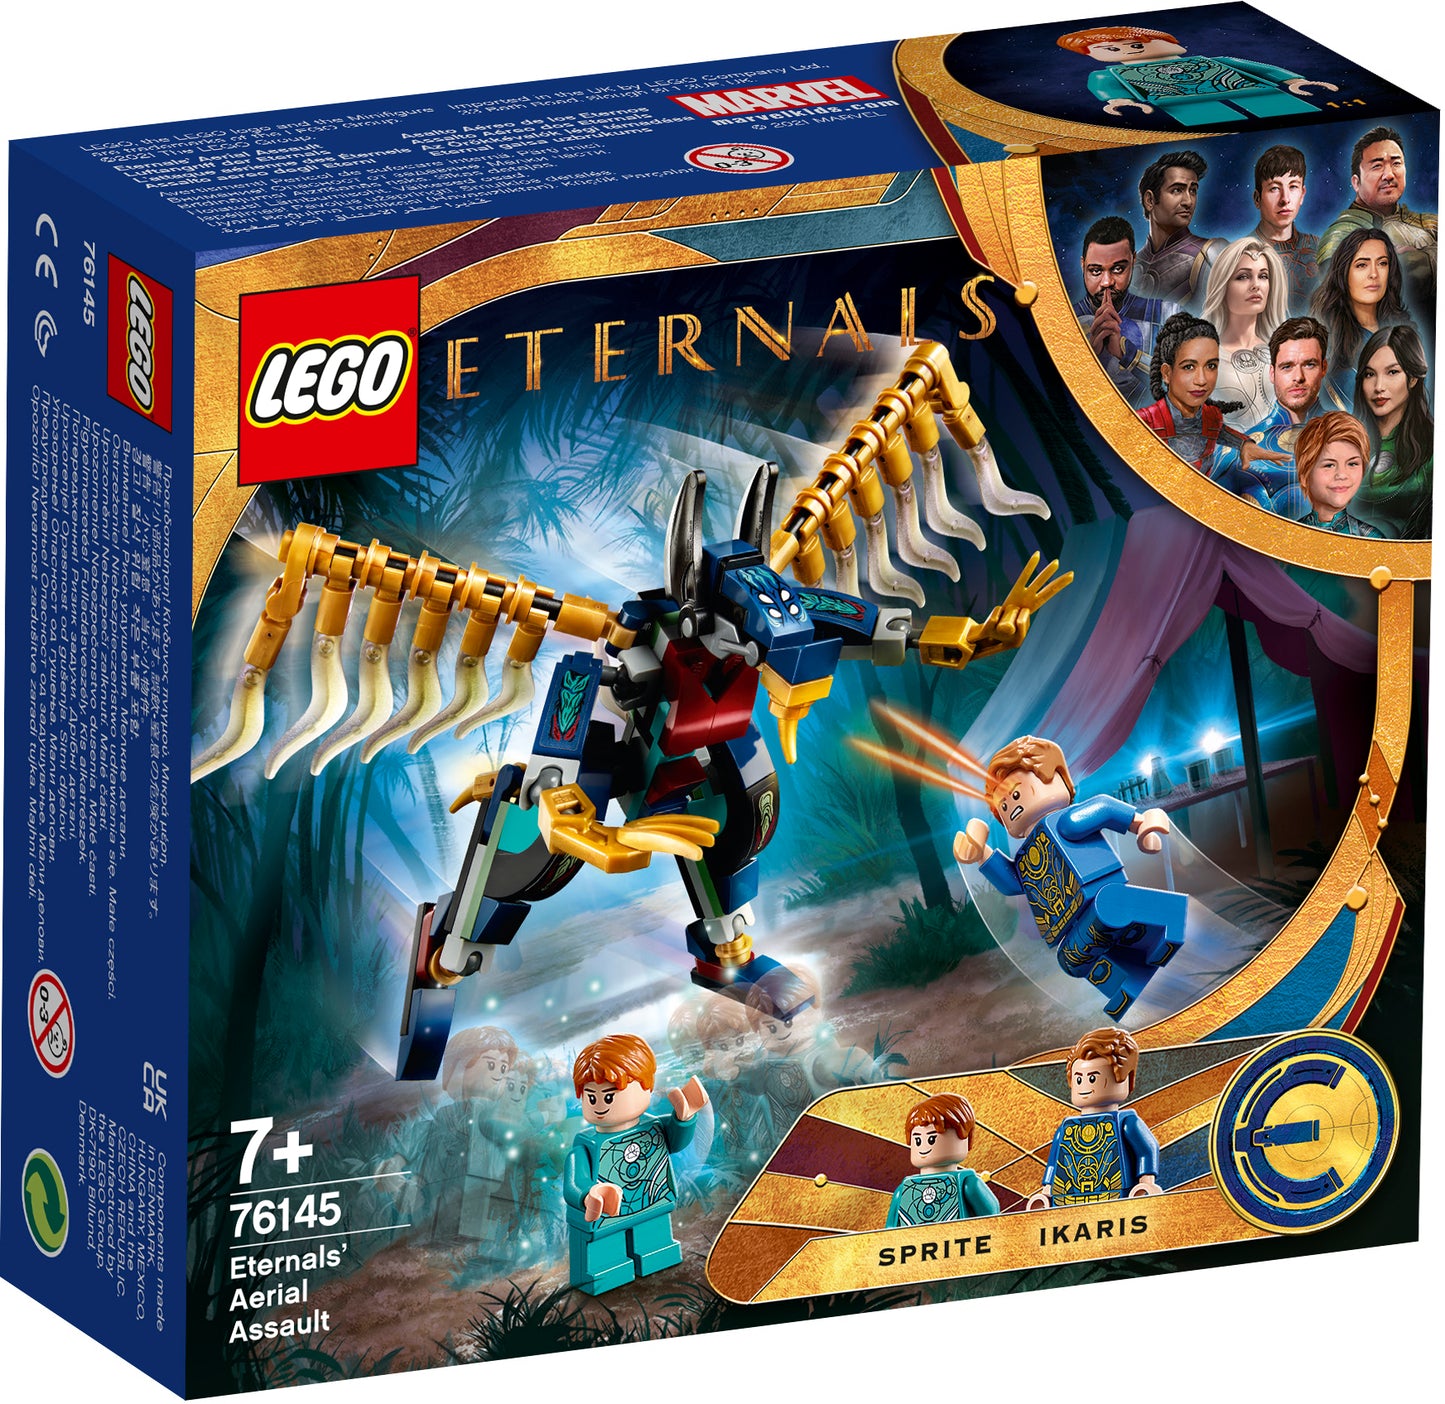 Eternal's luchtaanval-LEGO Eternals